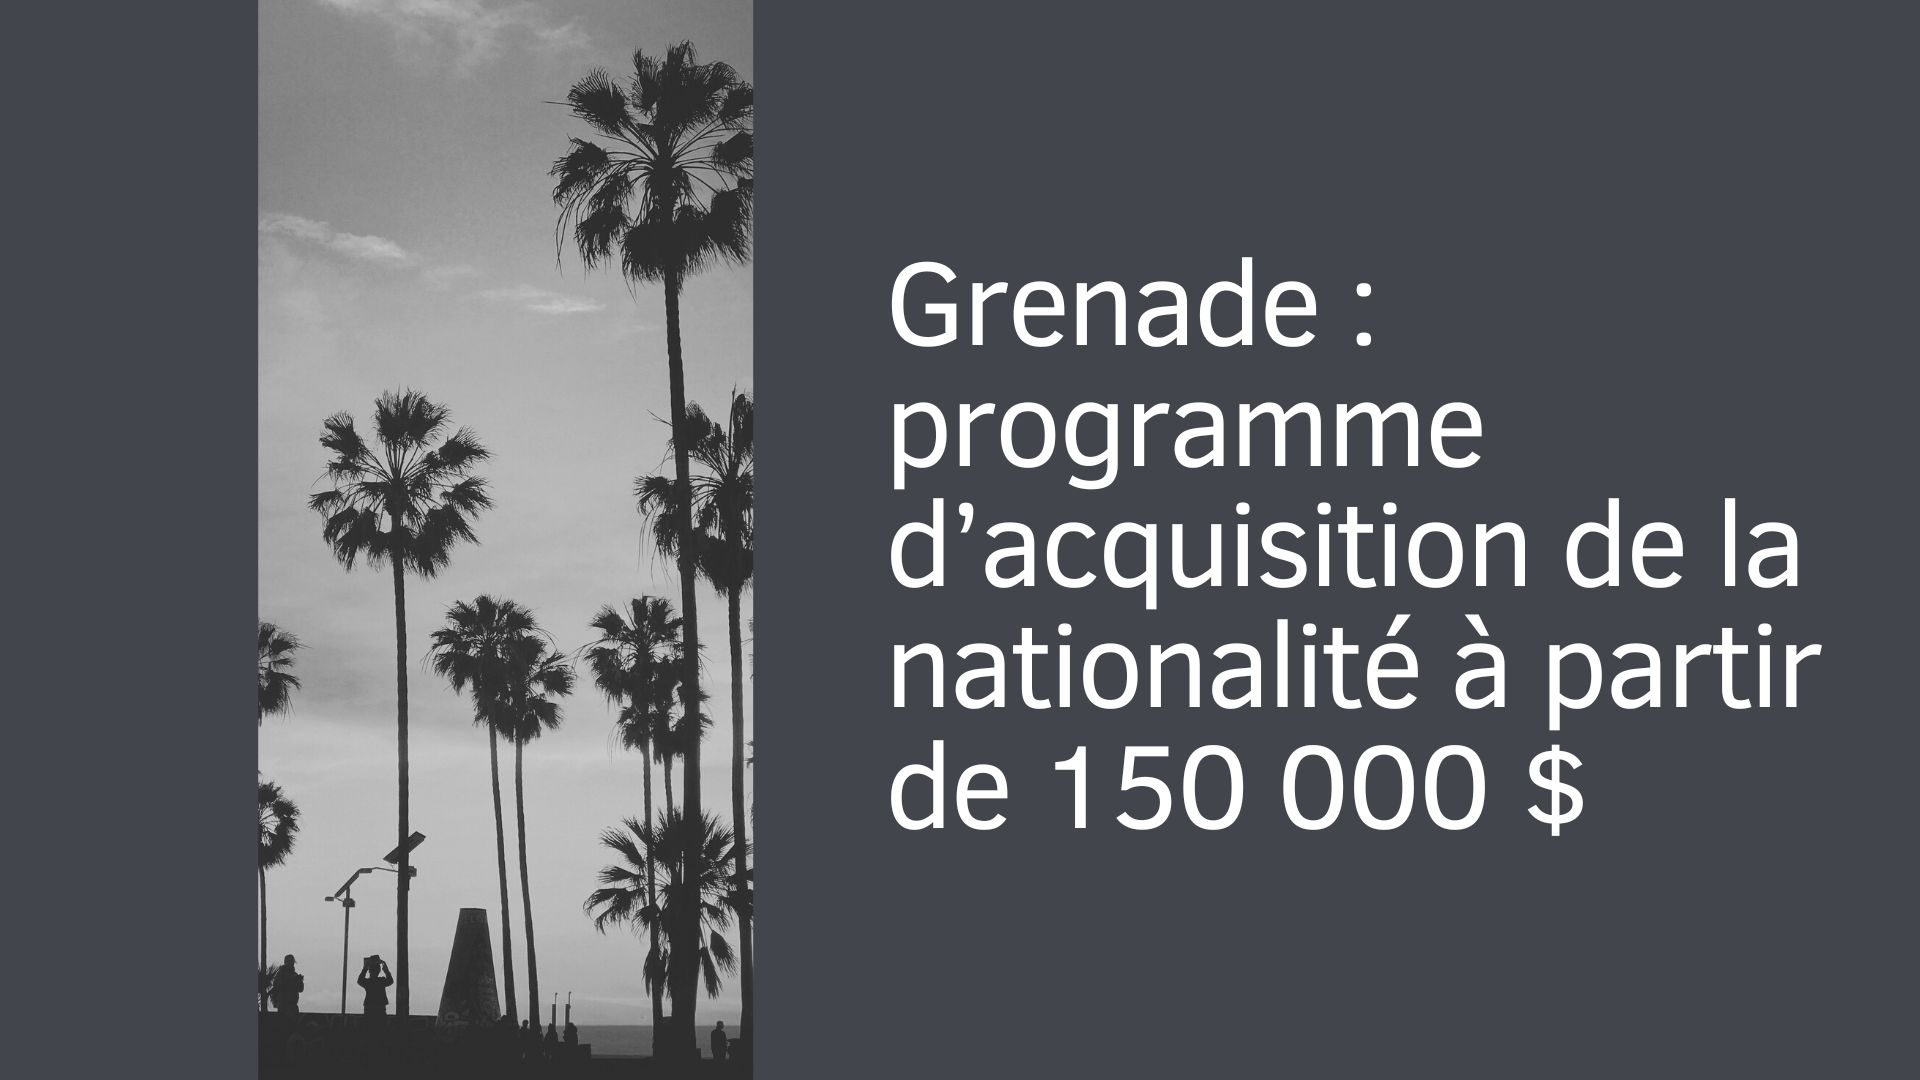 Grenade : programme d’acquisition de la nationalité à partir de 150 000 $